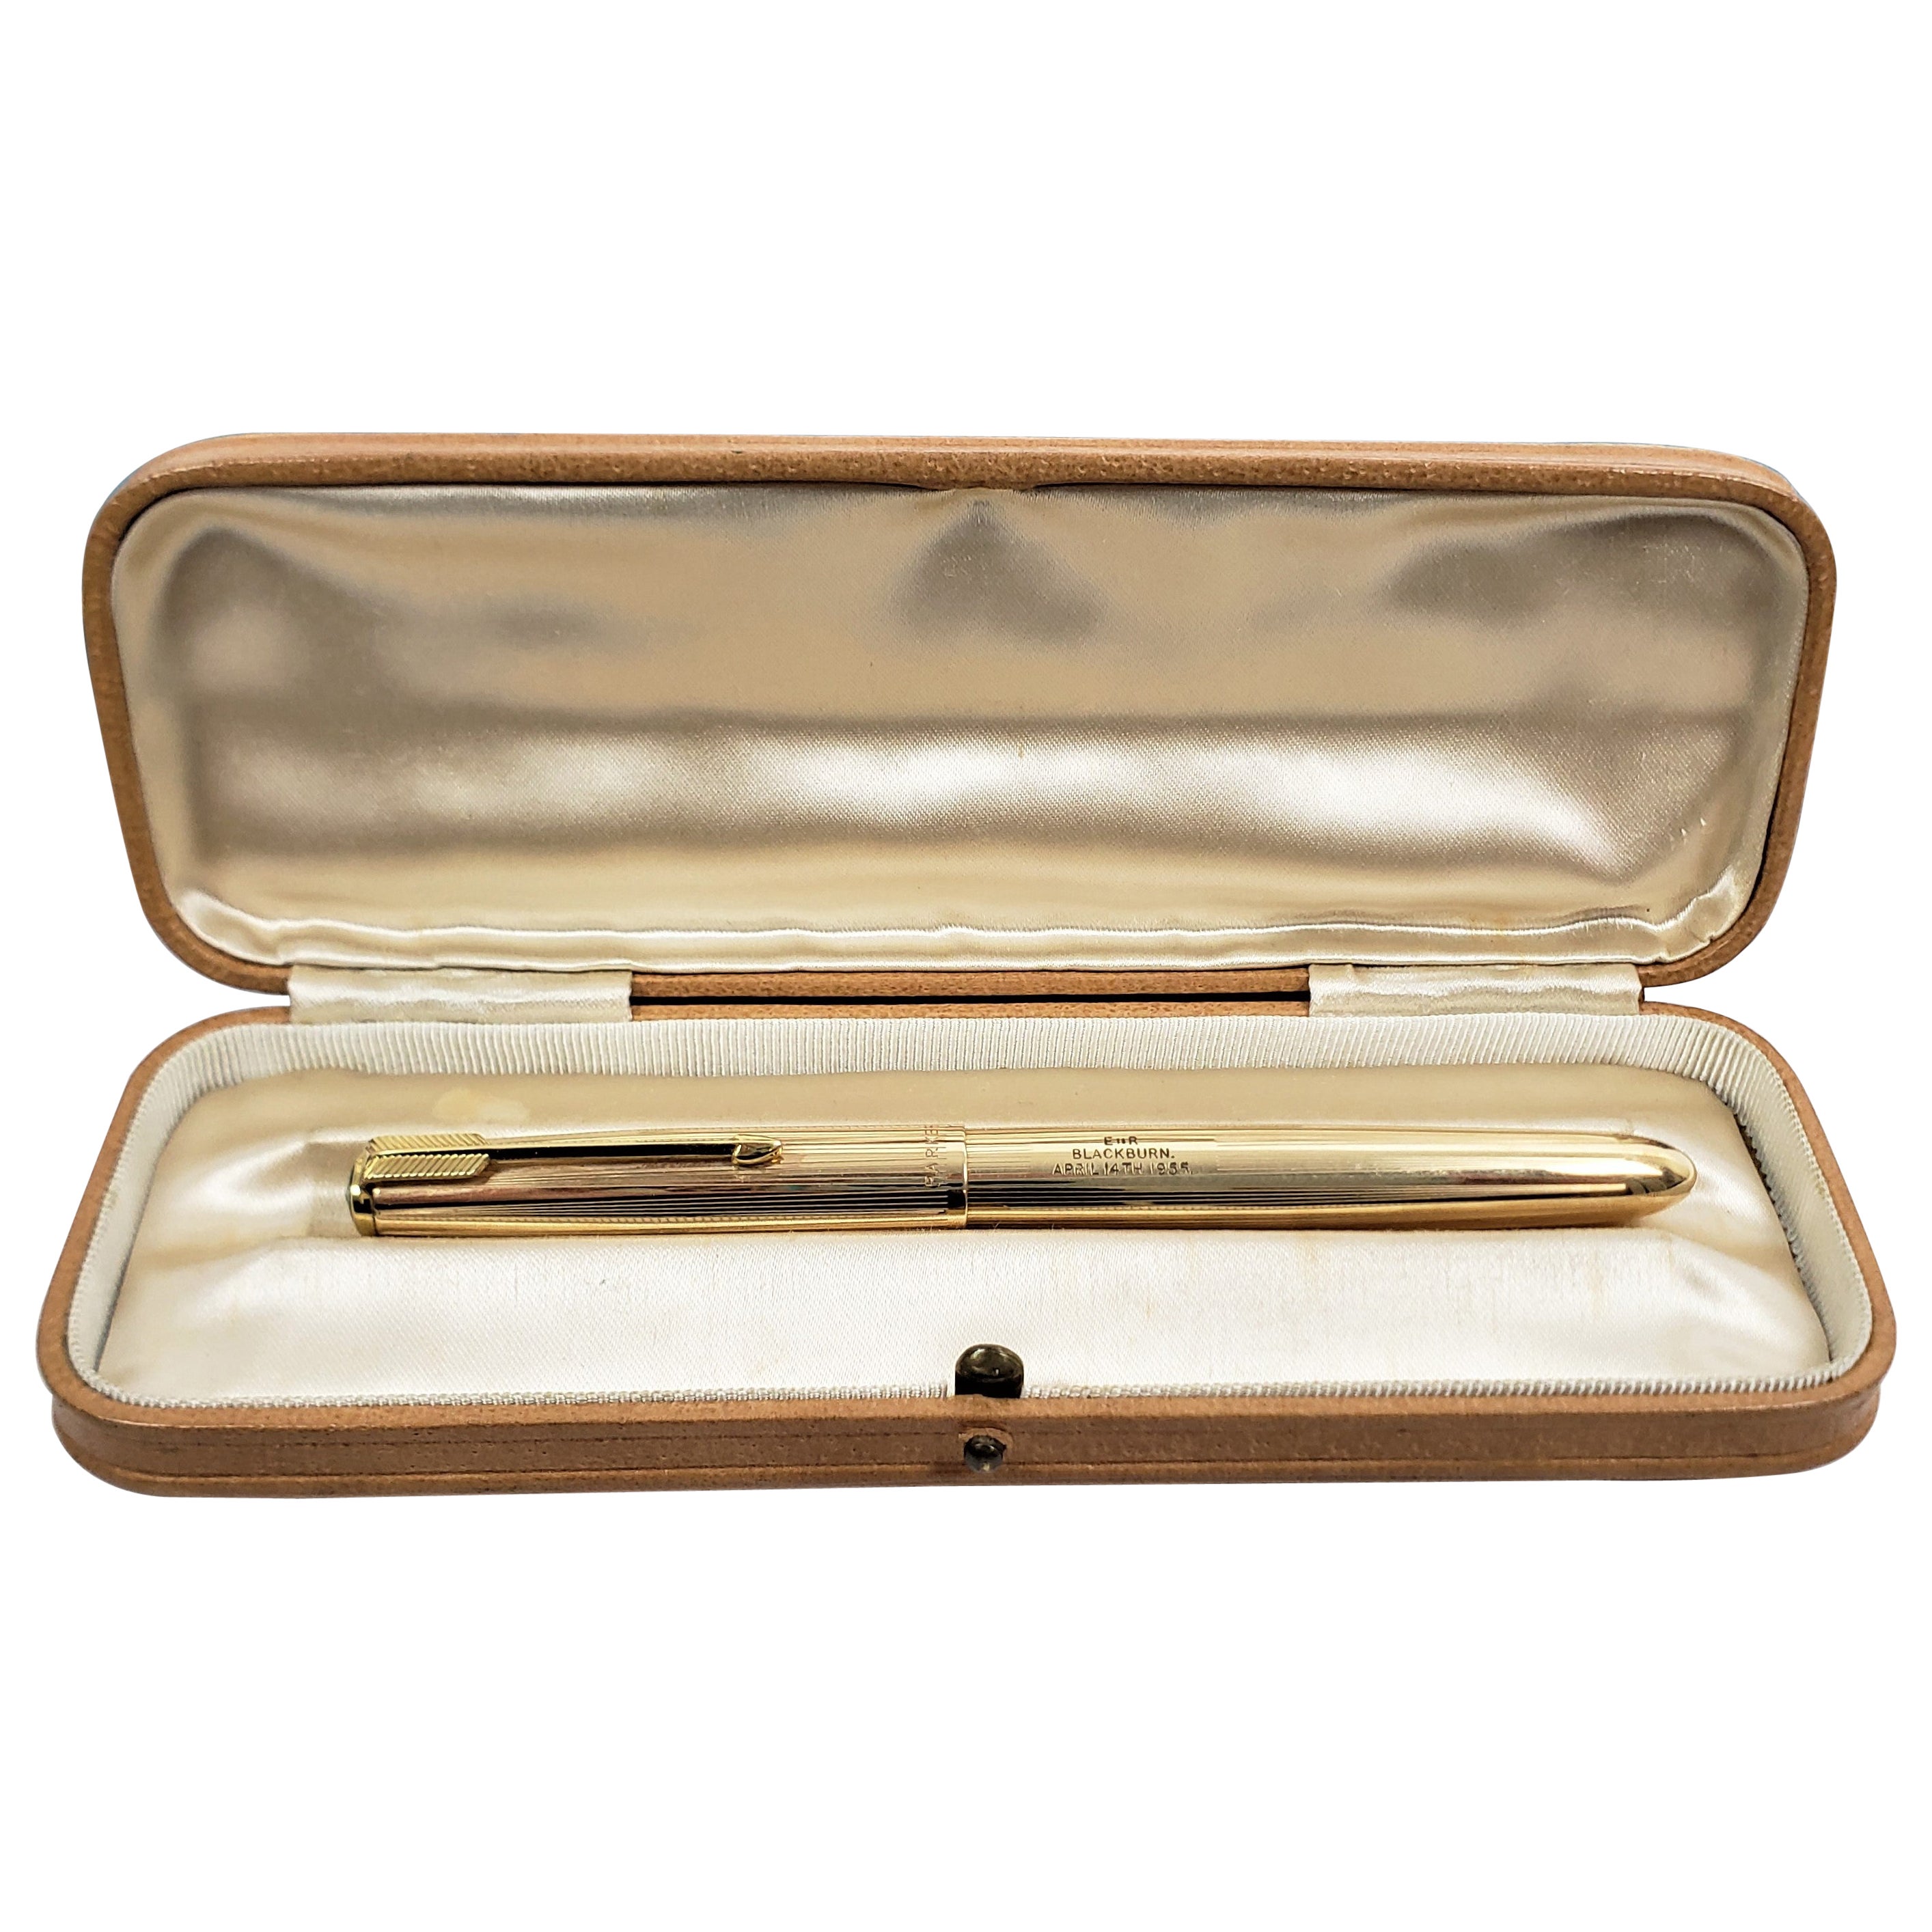 Queen Elizabeth II Used & Presented Parker Gold Filled Pen from Blackburn Visit